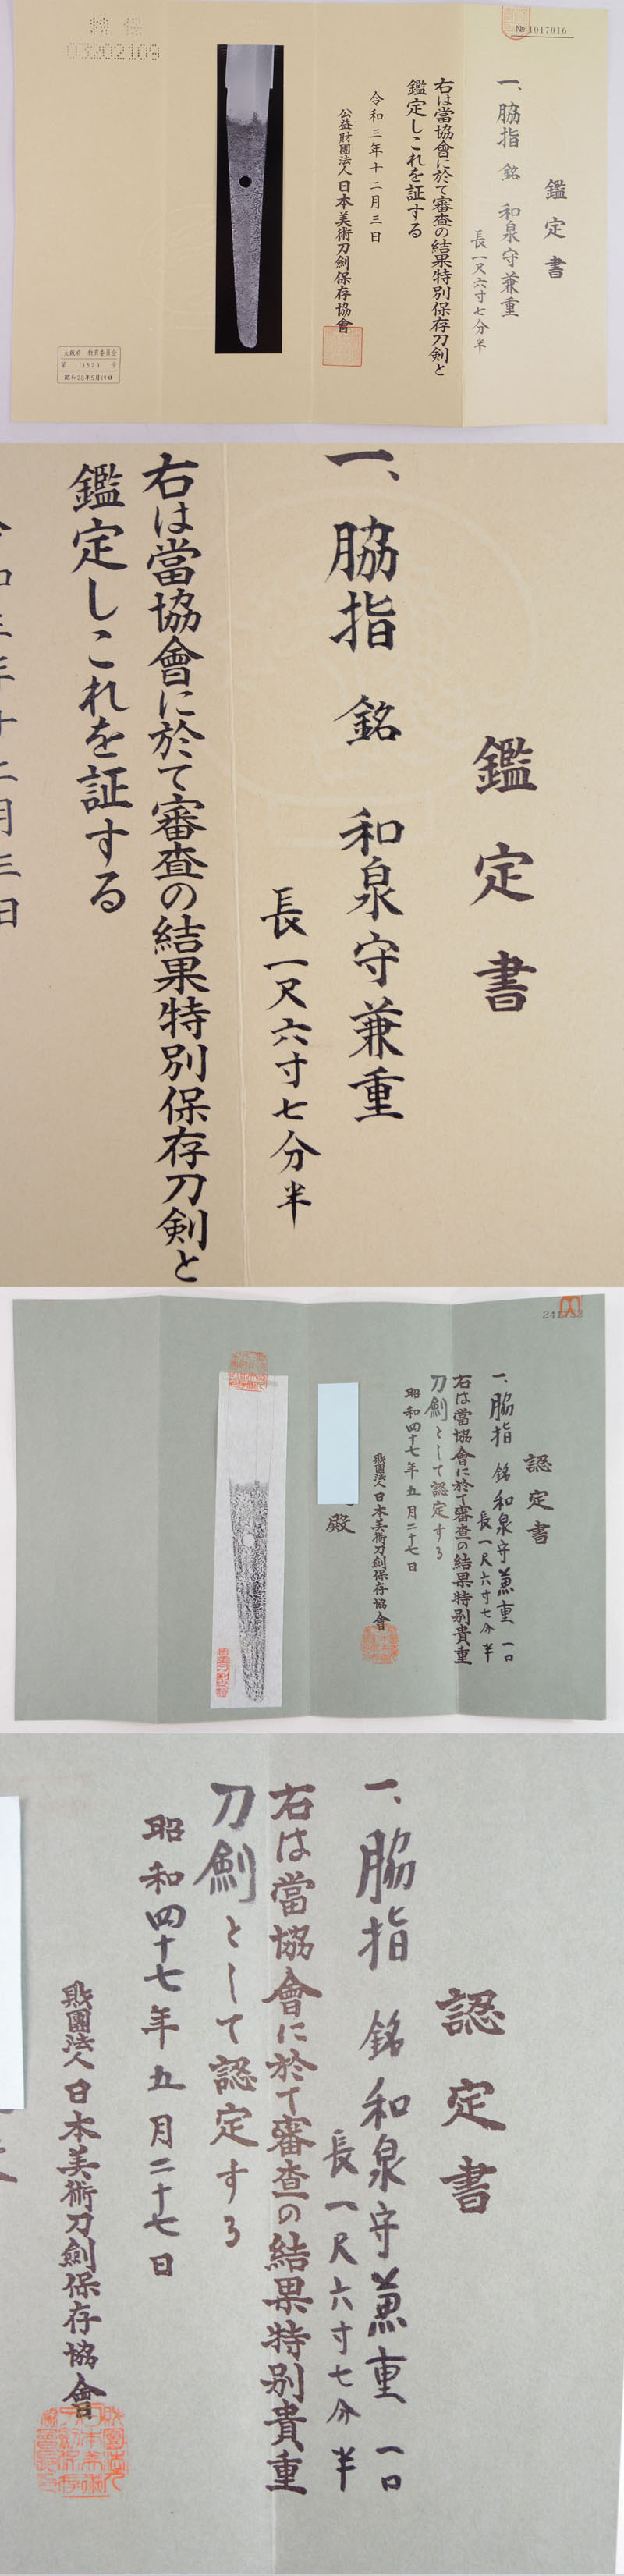 脇差　和泉守兼重 (宮本武蔵の愛刀) (新刀　上々作) (良業物) Picture of Certificate